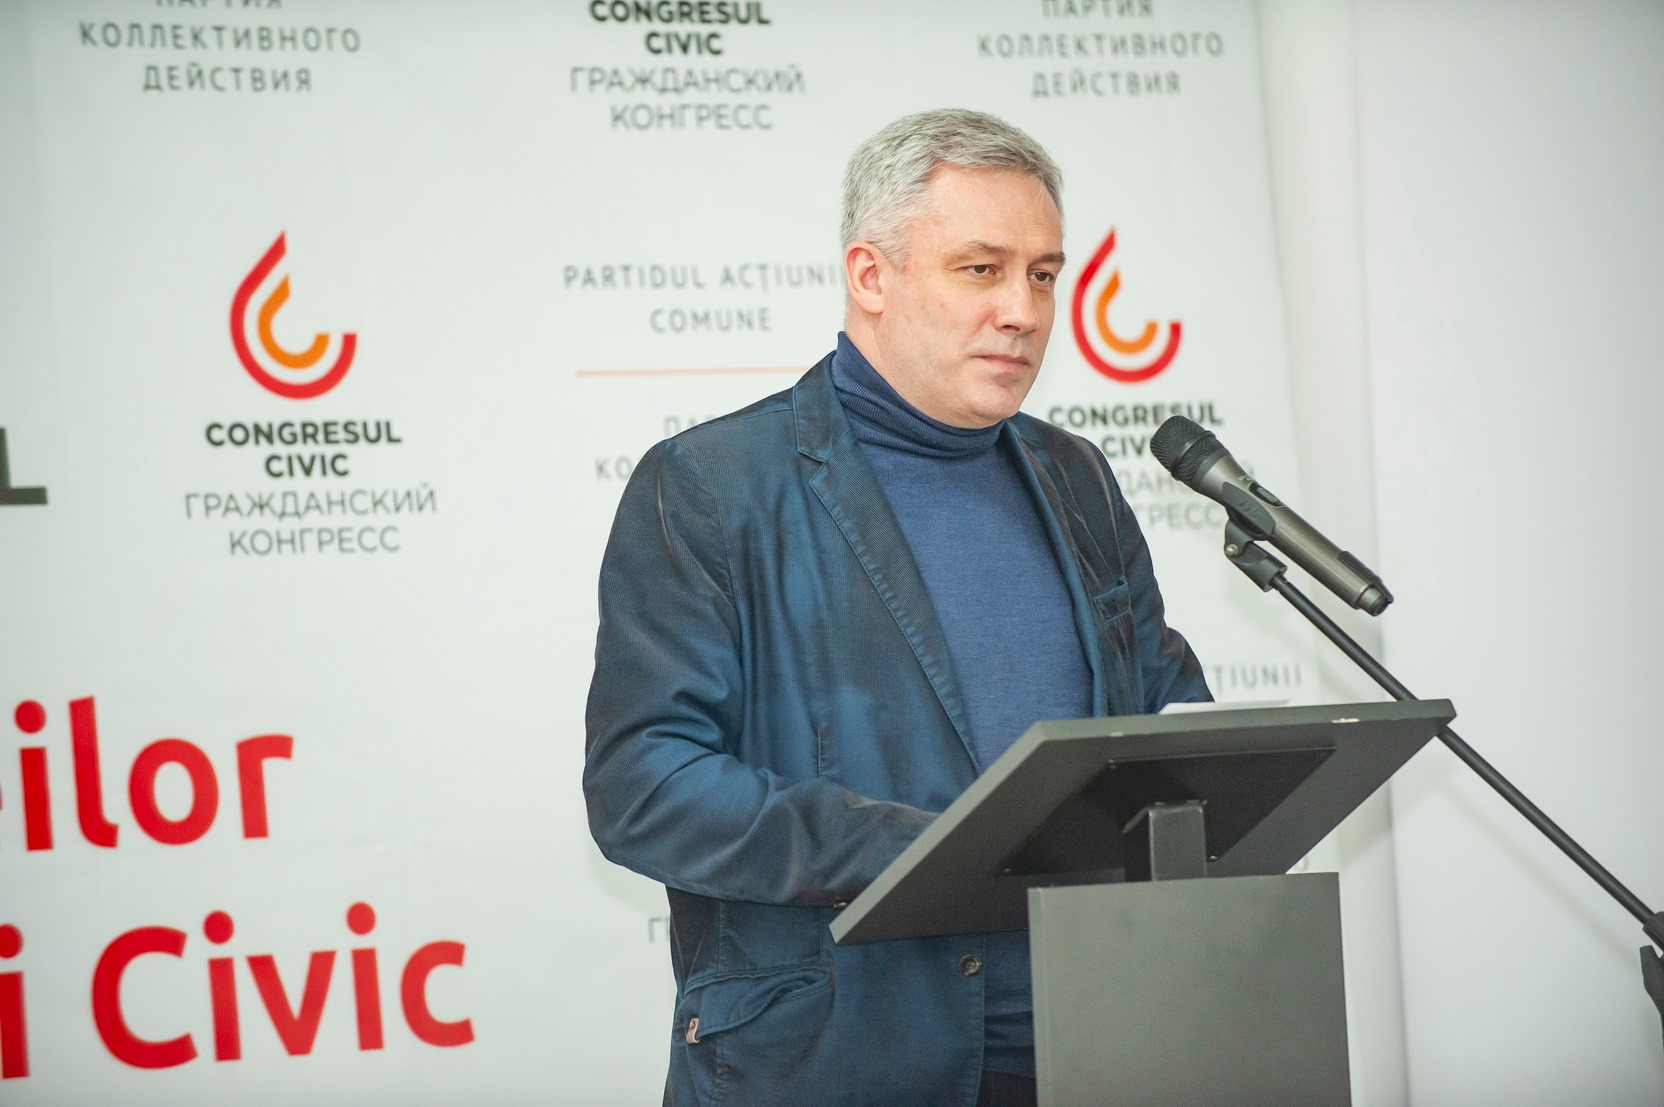 Зураб Тодуа: Республика Молдова накануне глобальных перемен